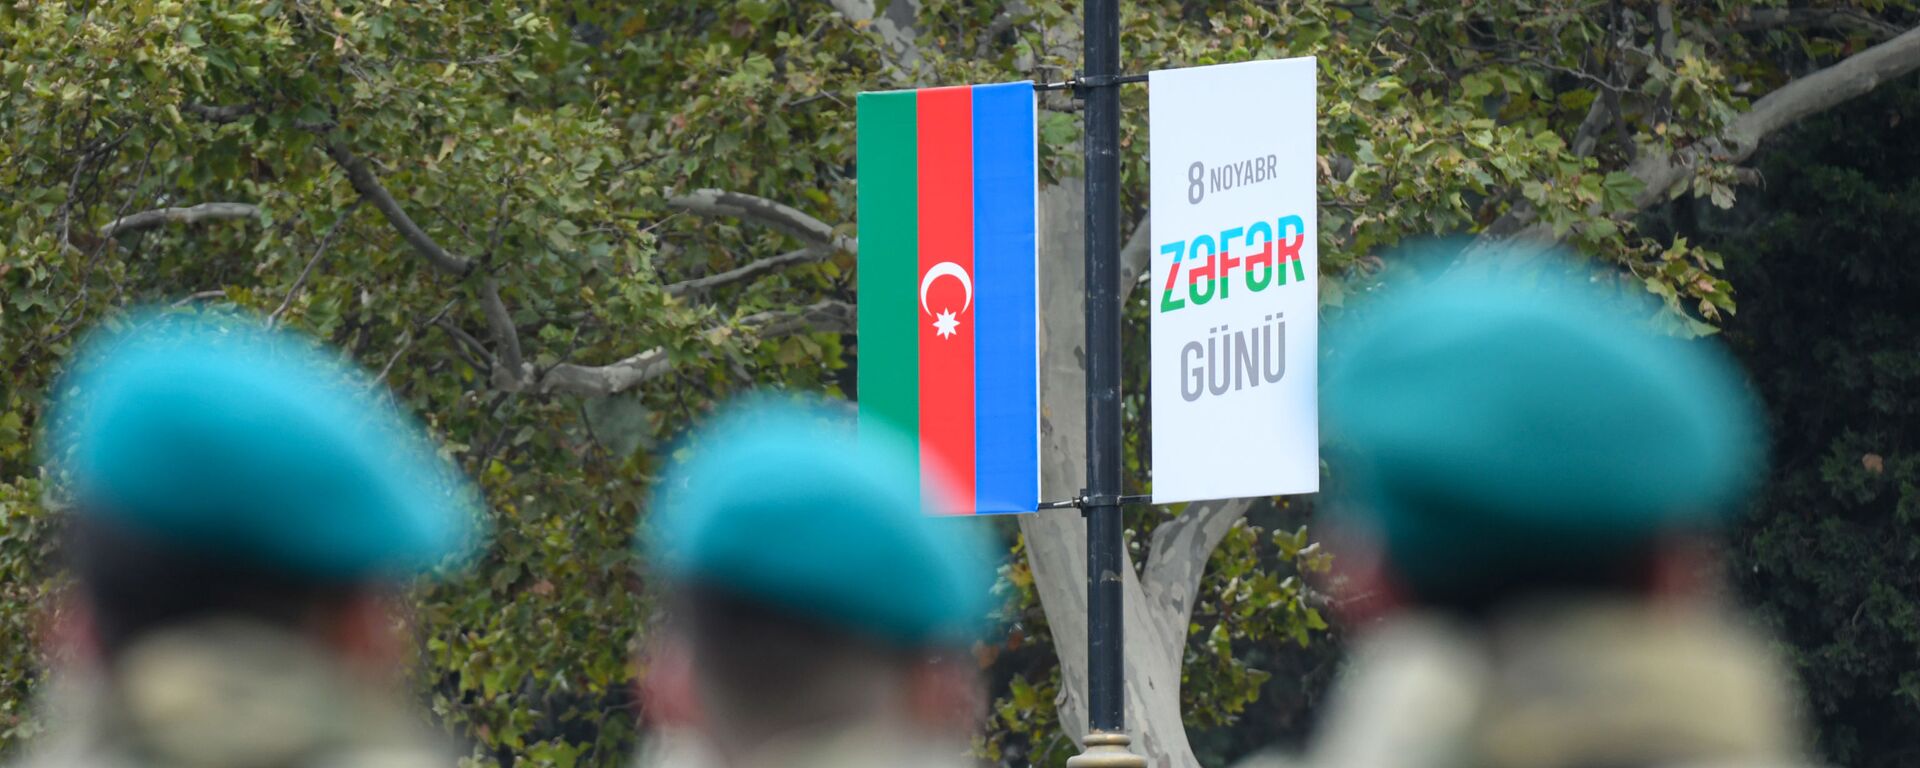 Военнослужащие ВС Азербайджана смотрят на плакат с надписью 8 ноября - День победы, фото из архива - Sputnik Азербайджан, 1920, 27.10.2021